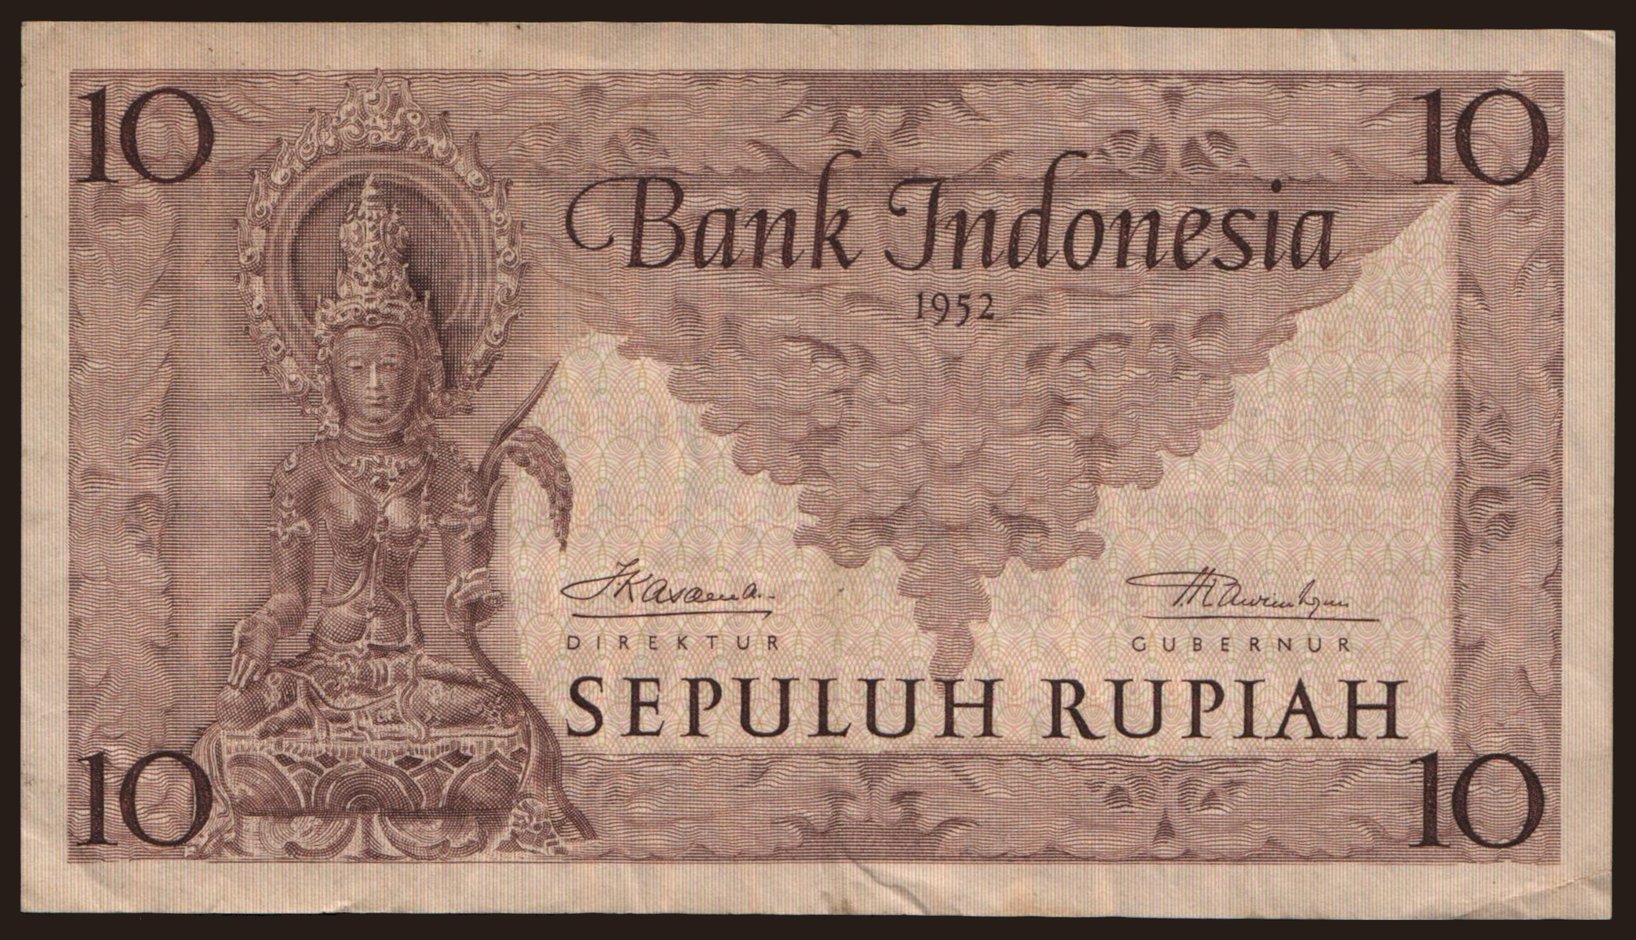 10 rupiah, 1952